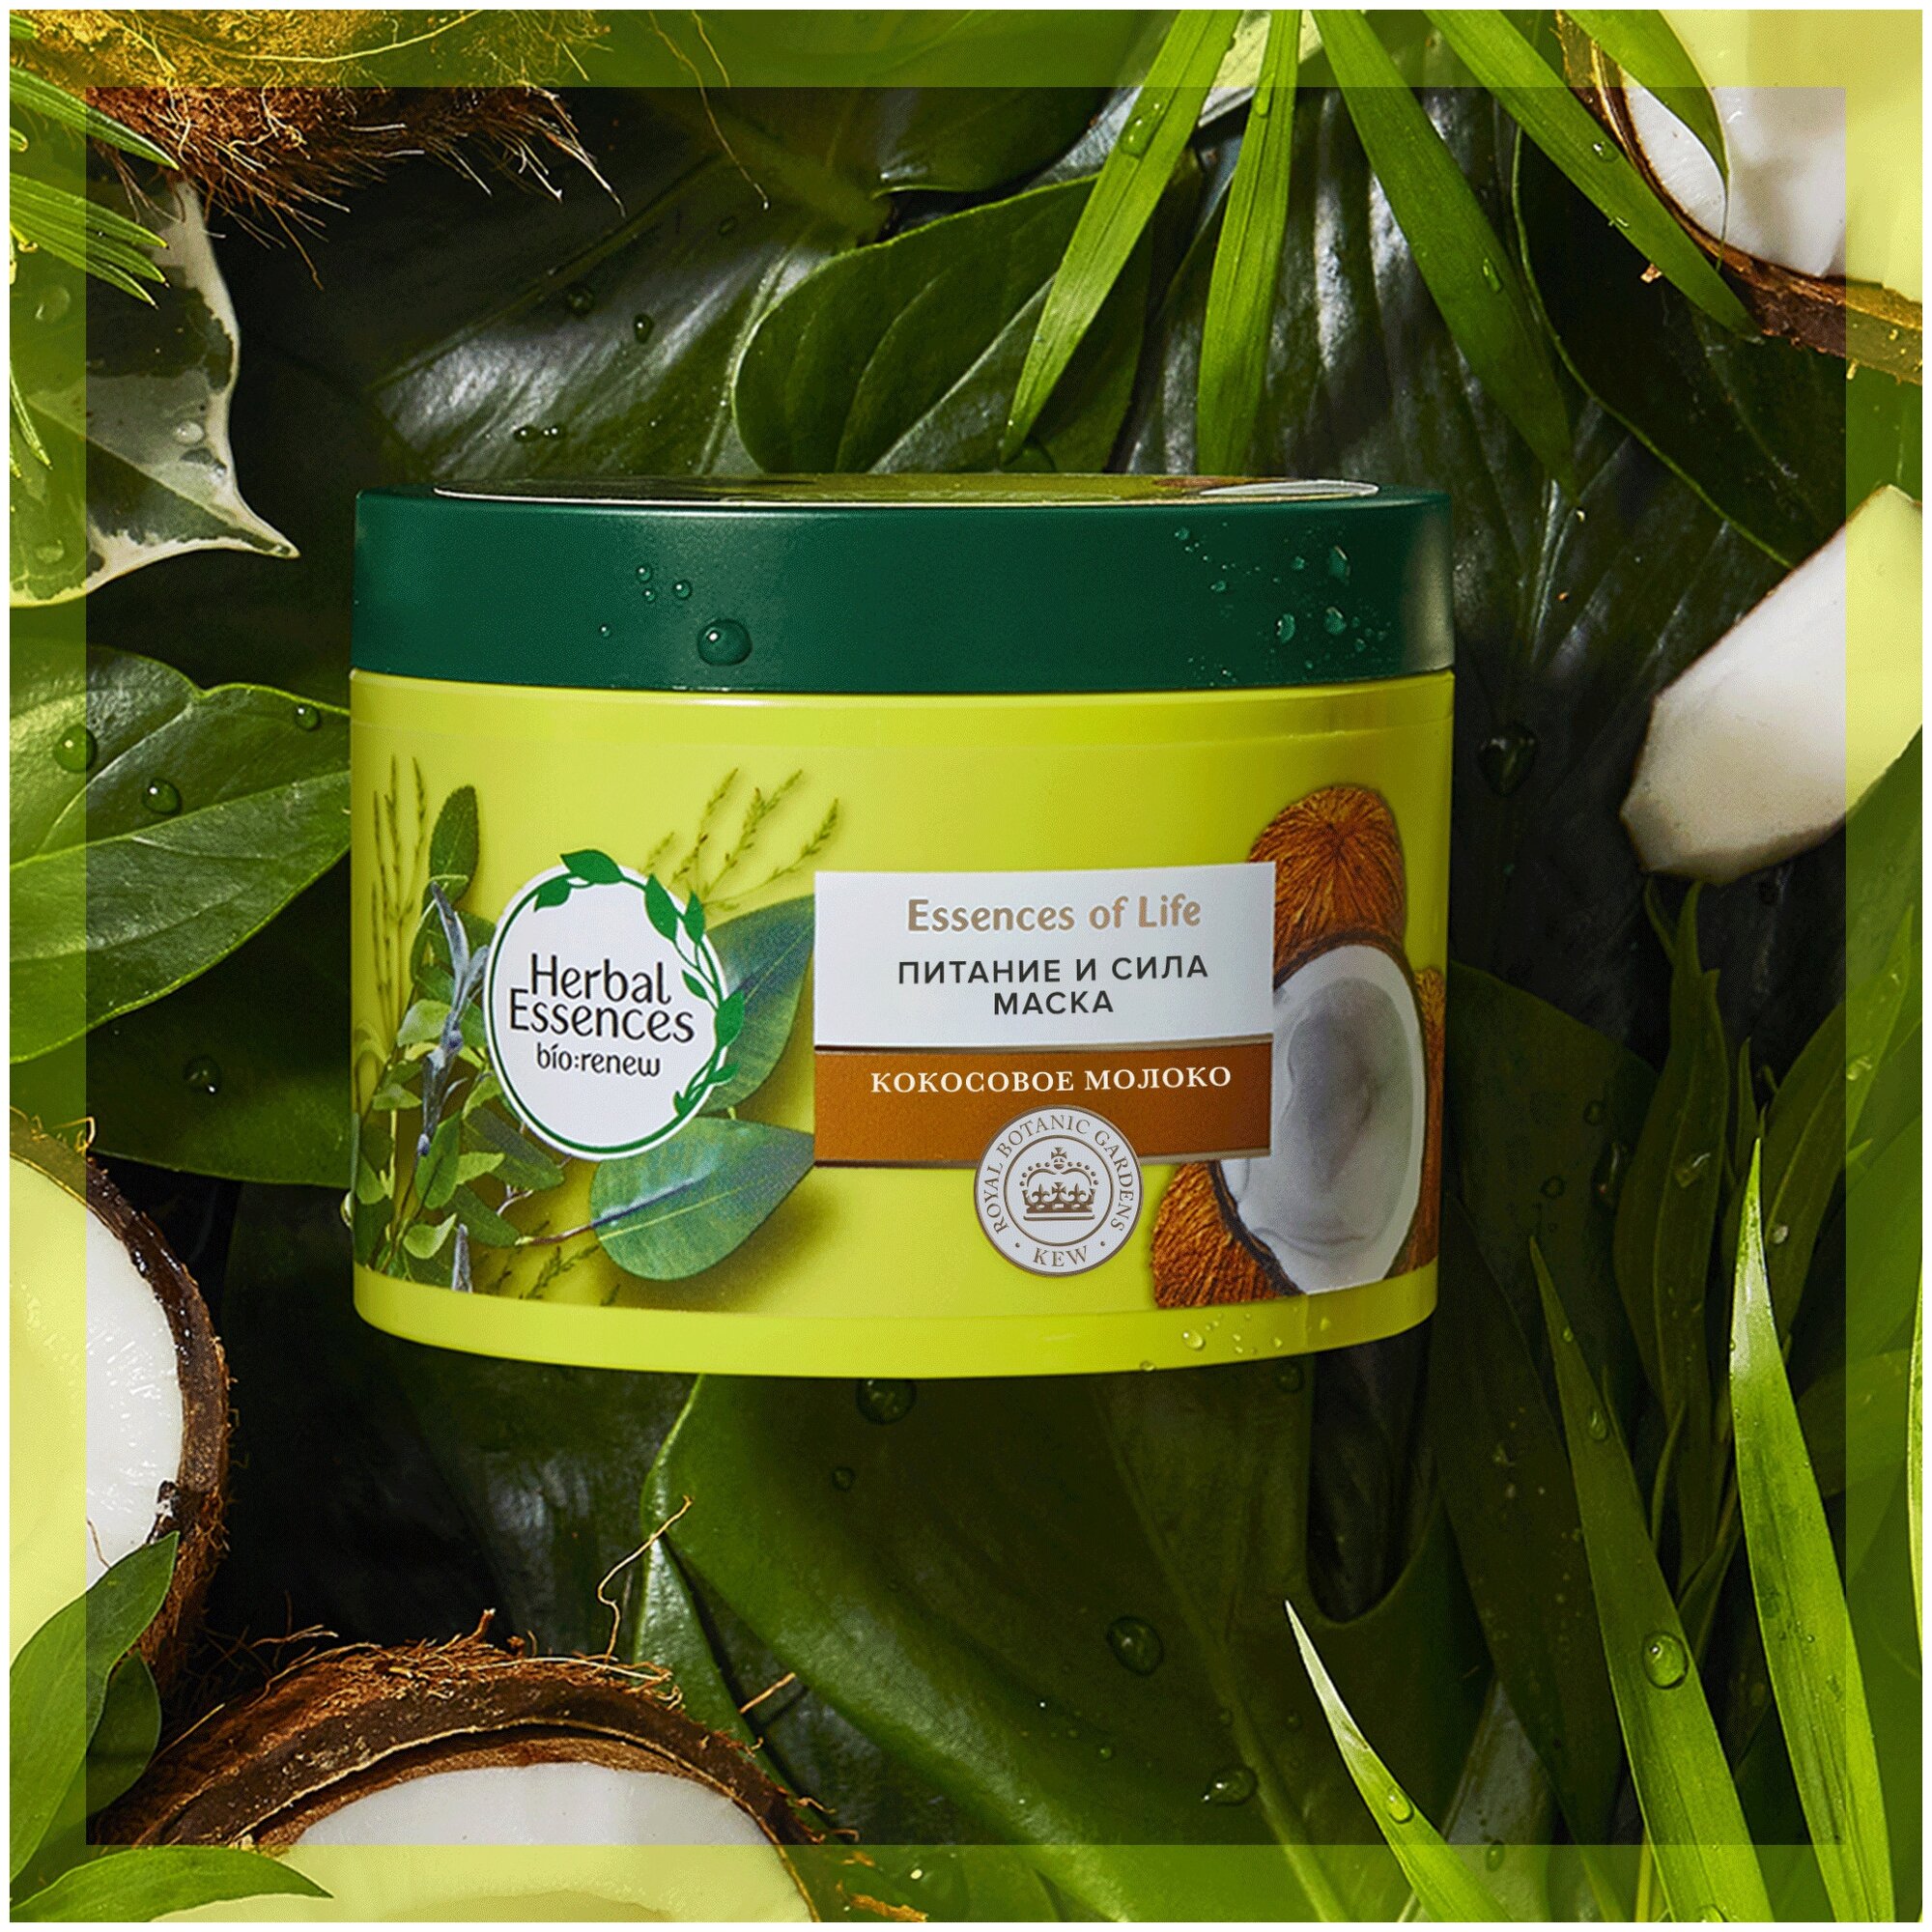 Mаска для волос Herbal Essences "Питание и сила" с кокосовым молоком, 450мл - фото №2